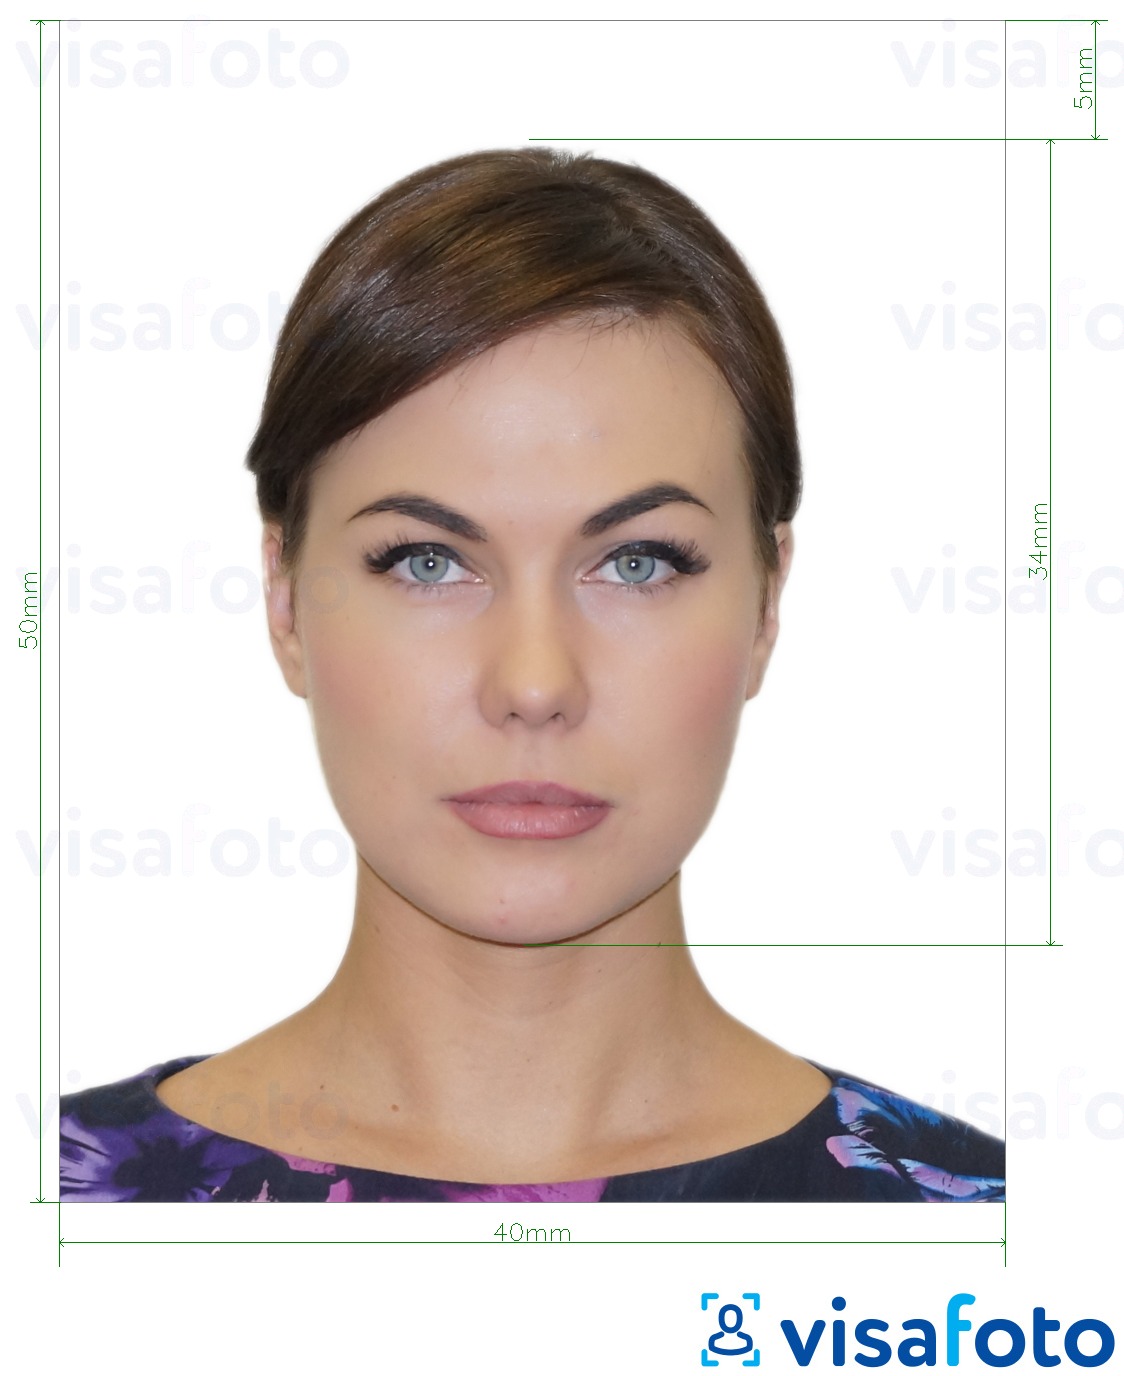 Exemple de foto per a Passaport de Xipre 4x5 cm (40x50 mm) amb la mida exacta especificada